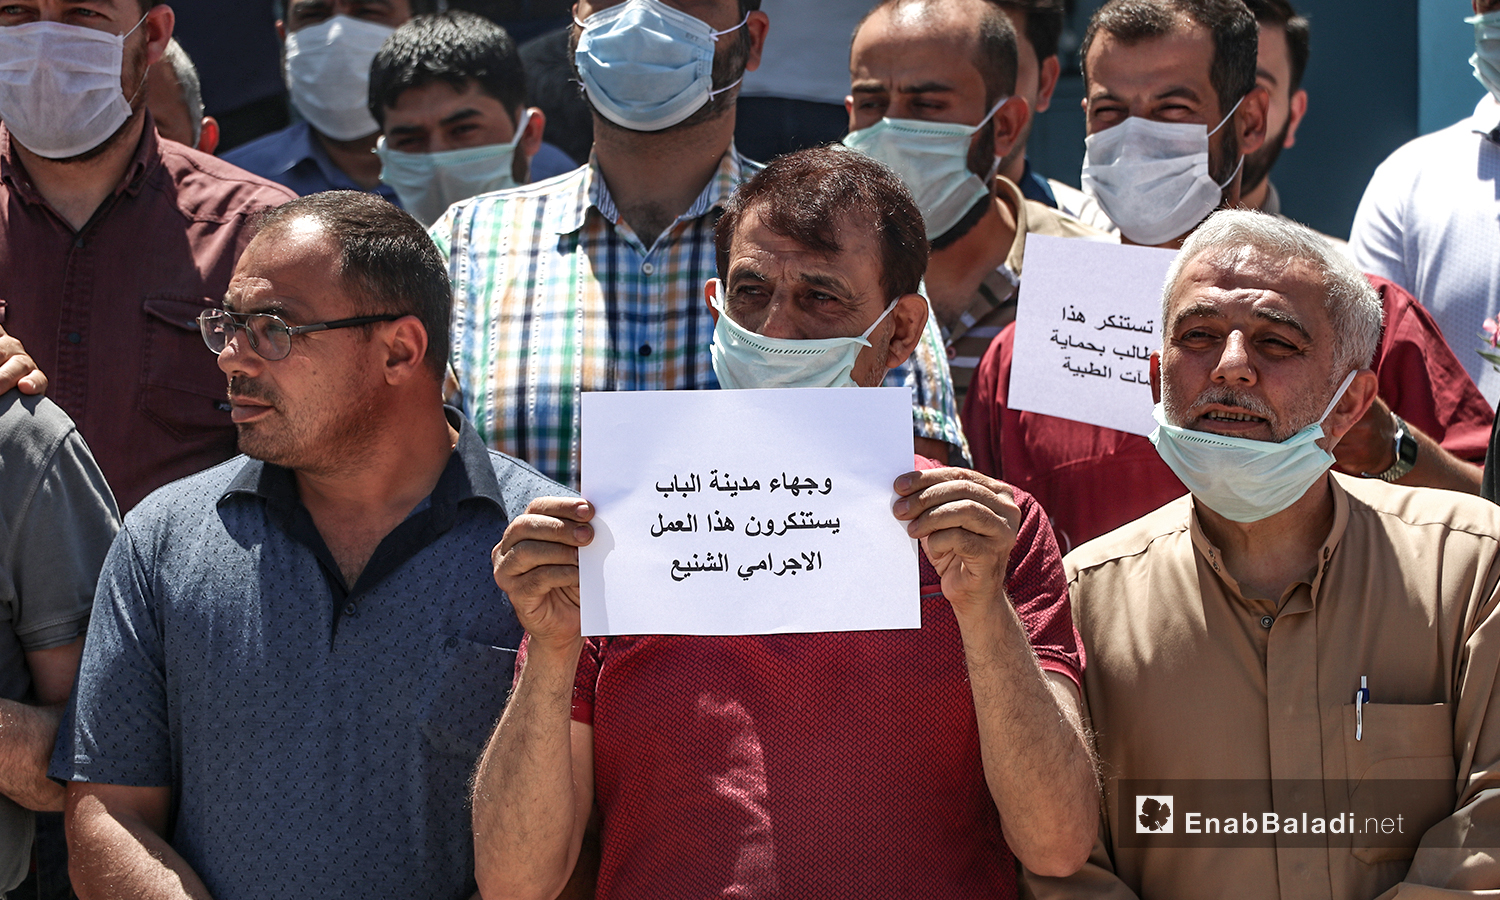 وقفة احتجاجية نظمتها نقابتا الأطباء والصيادلة جراء استهداف الصيدلي أحمد الحامد برصاص مجهولين في مدينة الباب بريف حلب الشمالي - 13 من تموز 2020 (عنب بلدي / عاصم الملحم)